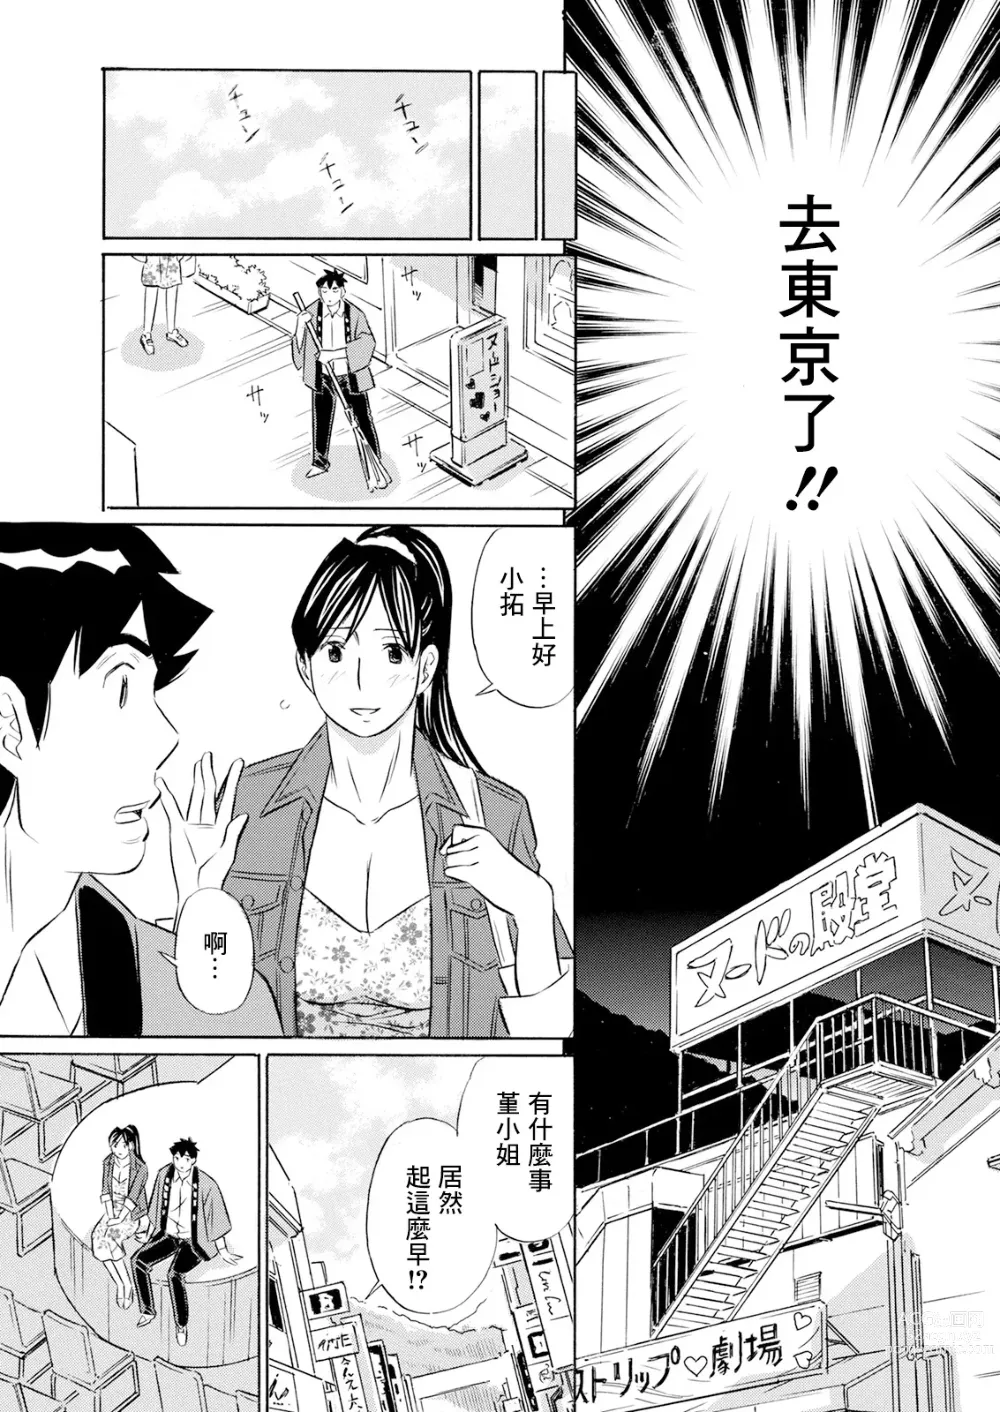 Page 7 of manga Junjou Strip